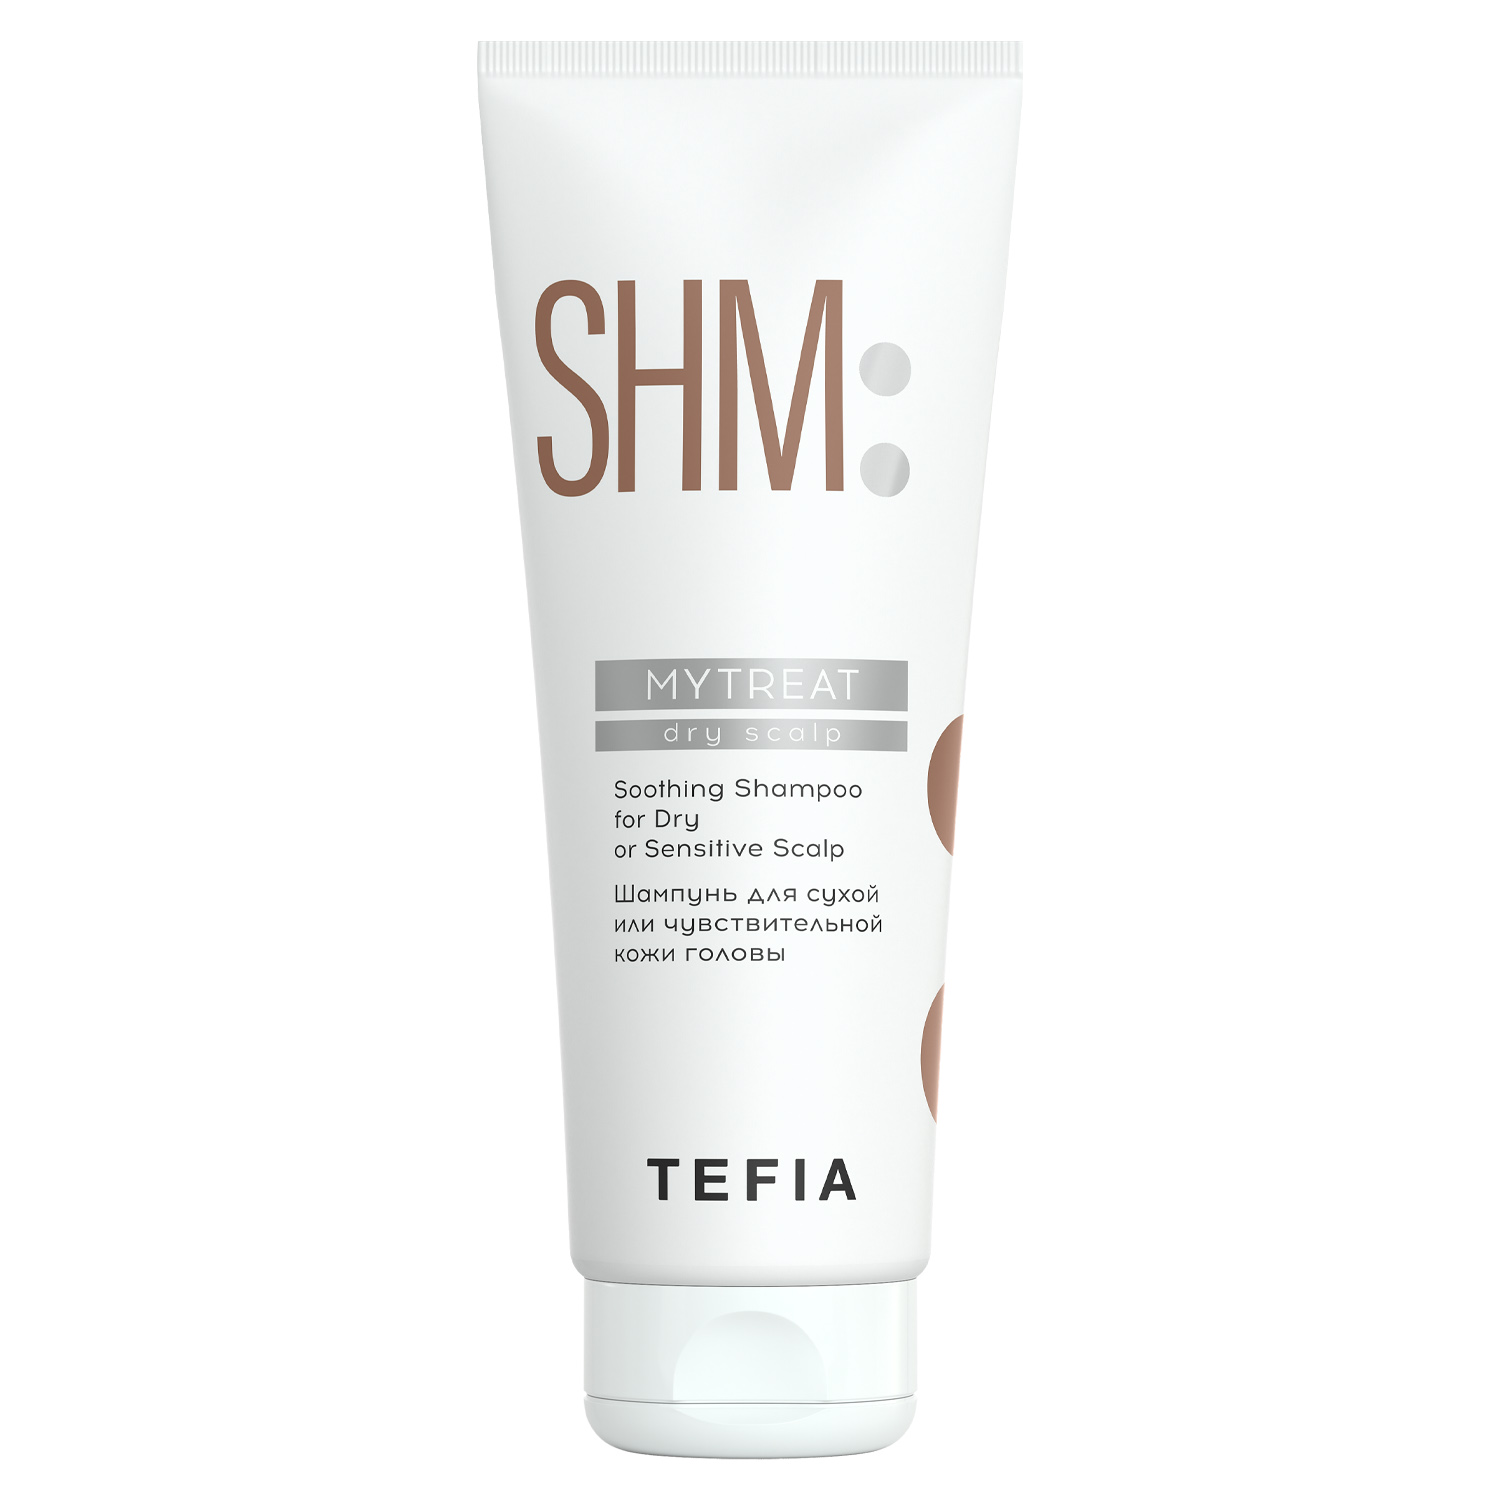 Tefia Шампунь для сухой или чувствительной кожи головы, 250 мл (Tefia, MyTreat) tefia сыворотка для сухой или чувствительной кожи головы mytreat 120 мл